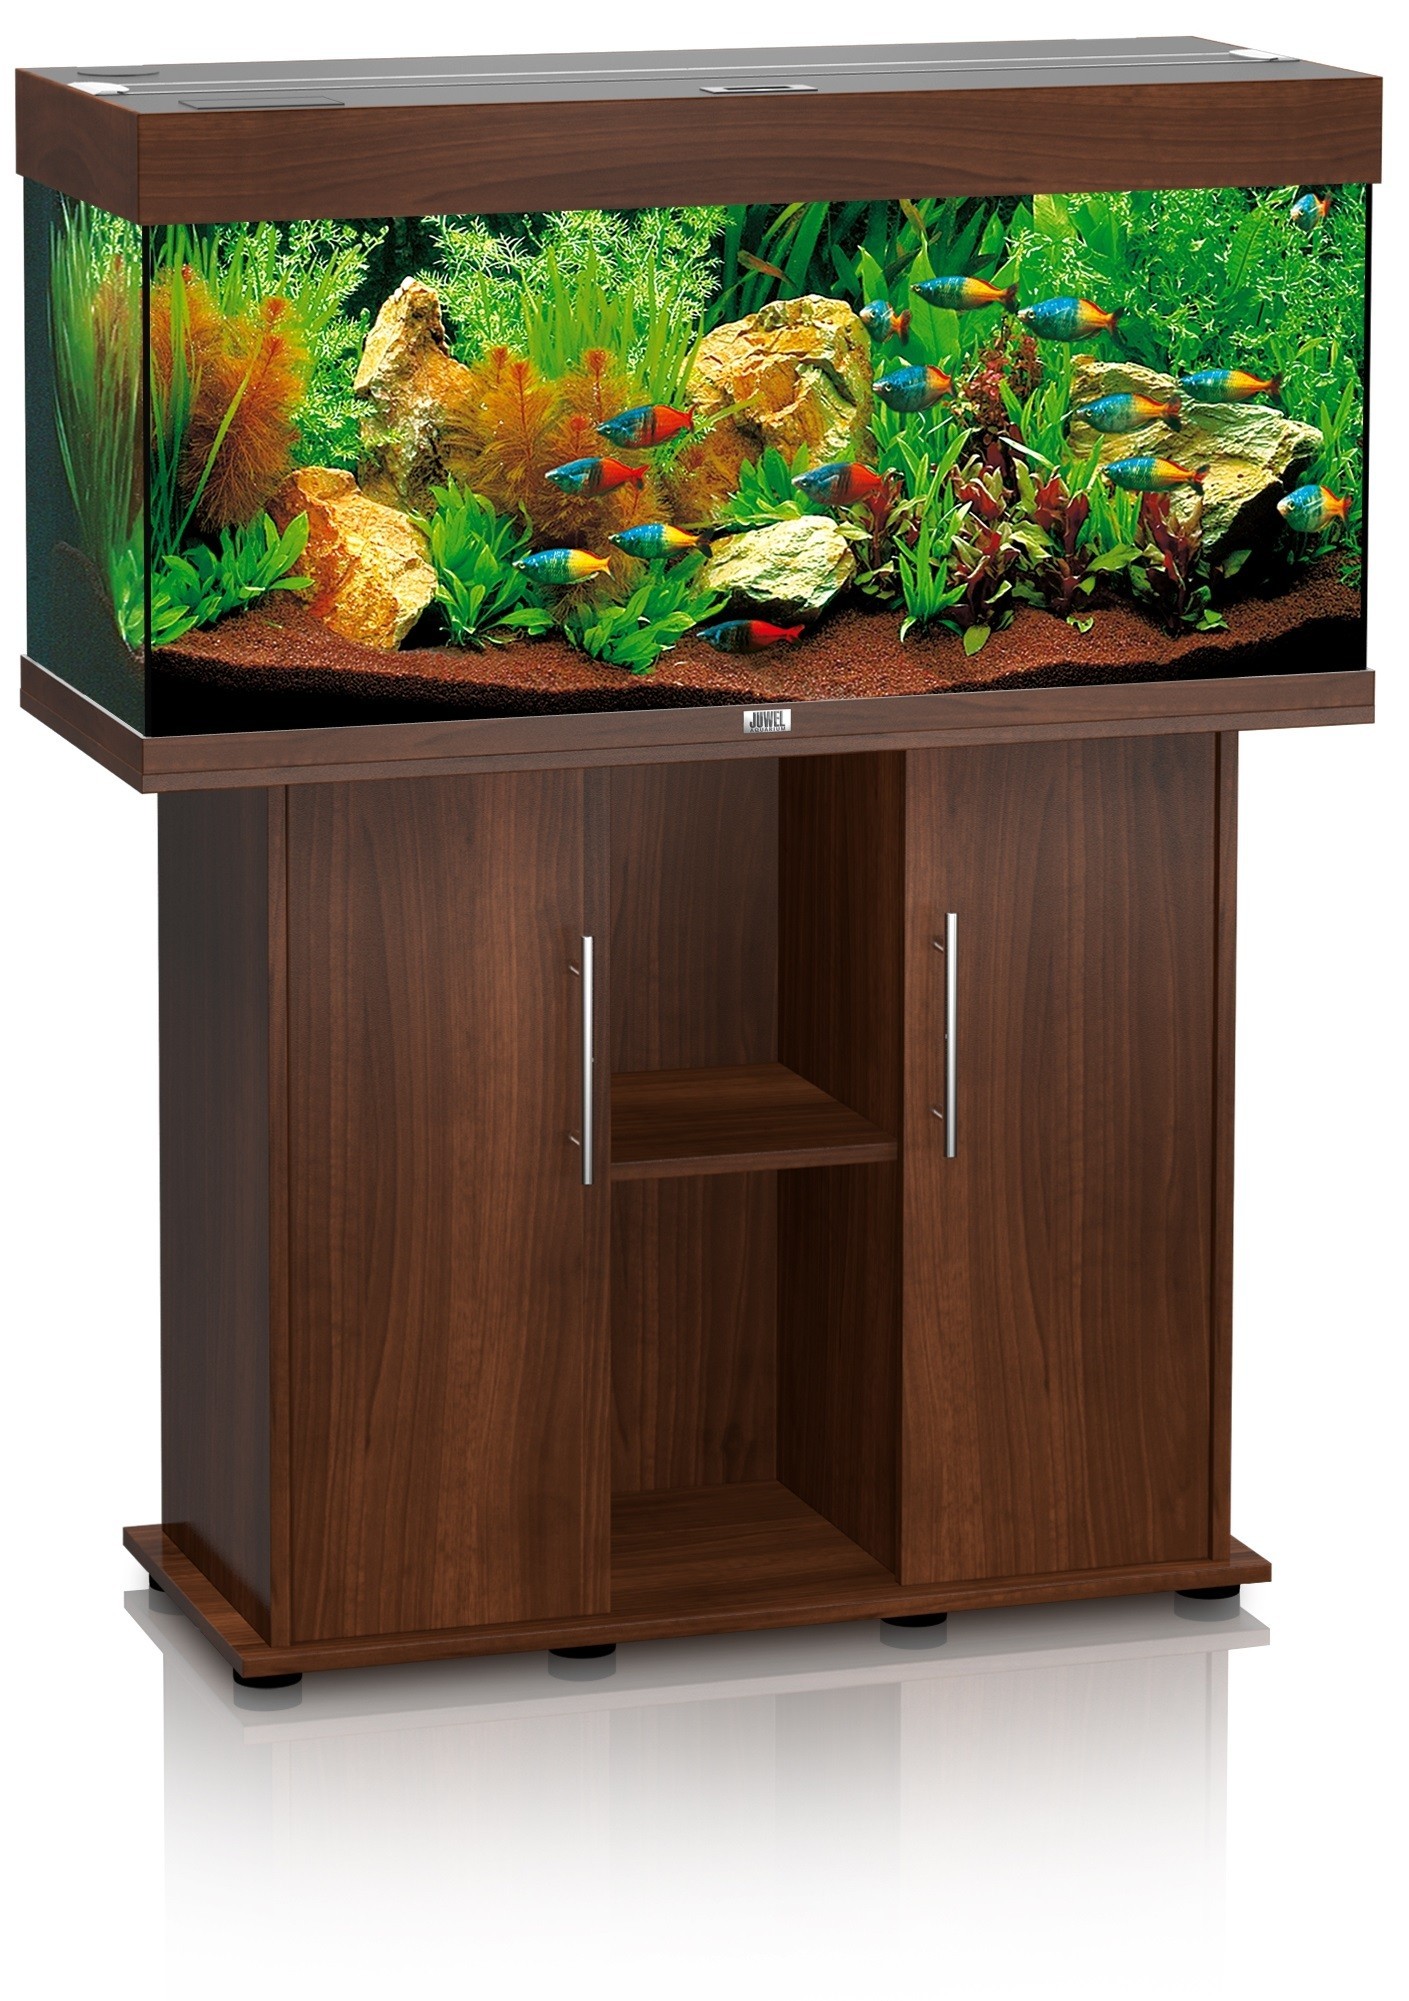 Aquarium Juwel Rio 180 brun + meuble